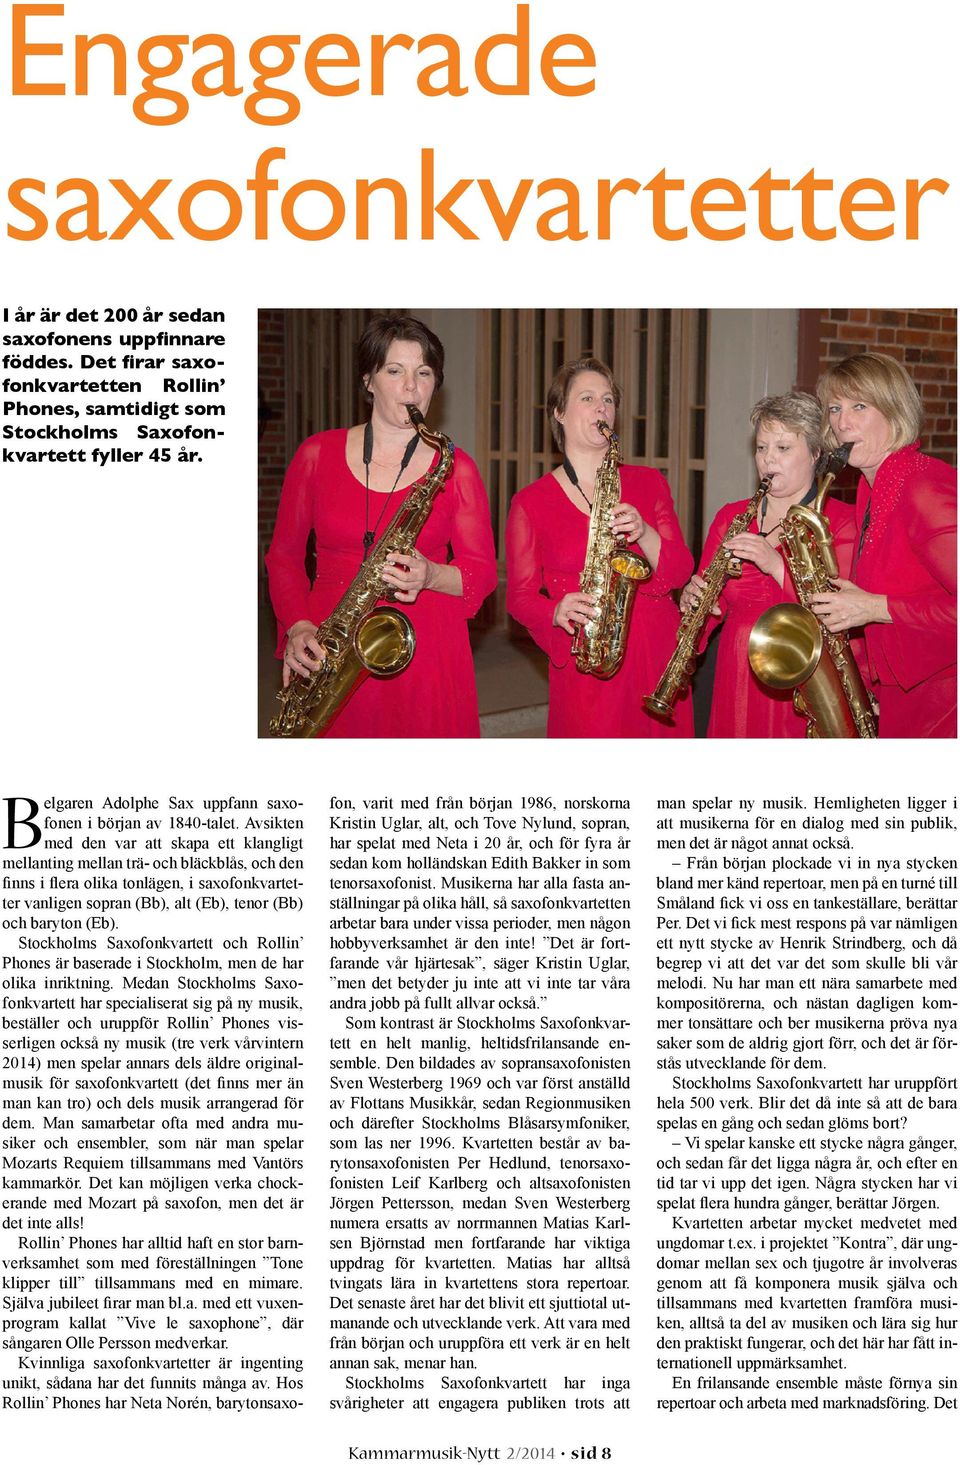 Medan Stockholms Saxofonkvartett har specialiserat sig på ny musik, beställer och uruppför Rollin Phones visserligen också ny musik (tre verk vårvintern - man kan tro) och dels musik arrangerad för